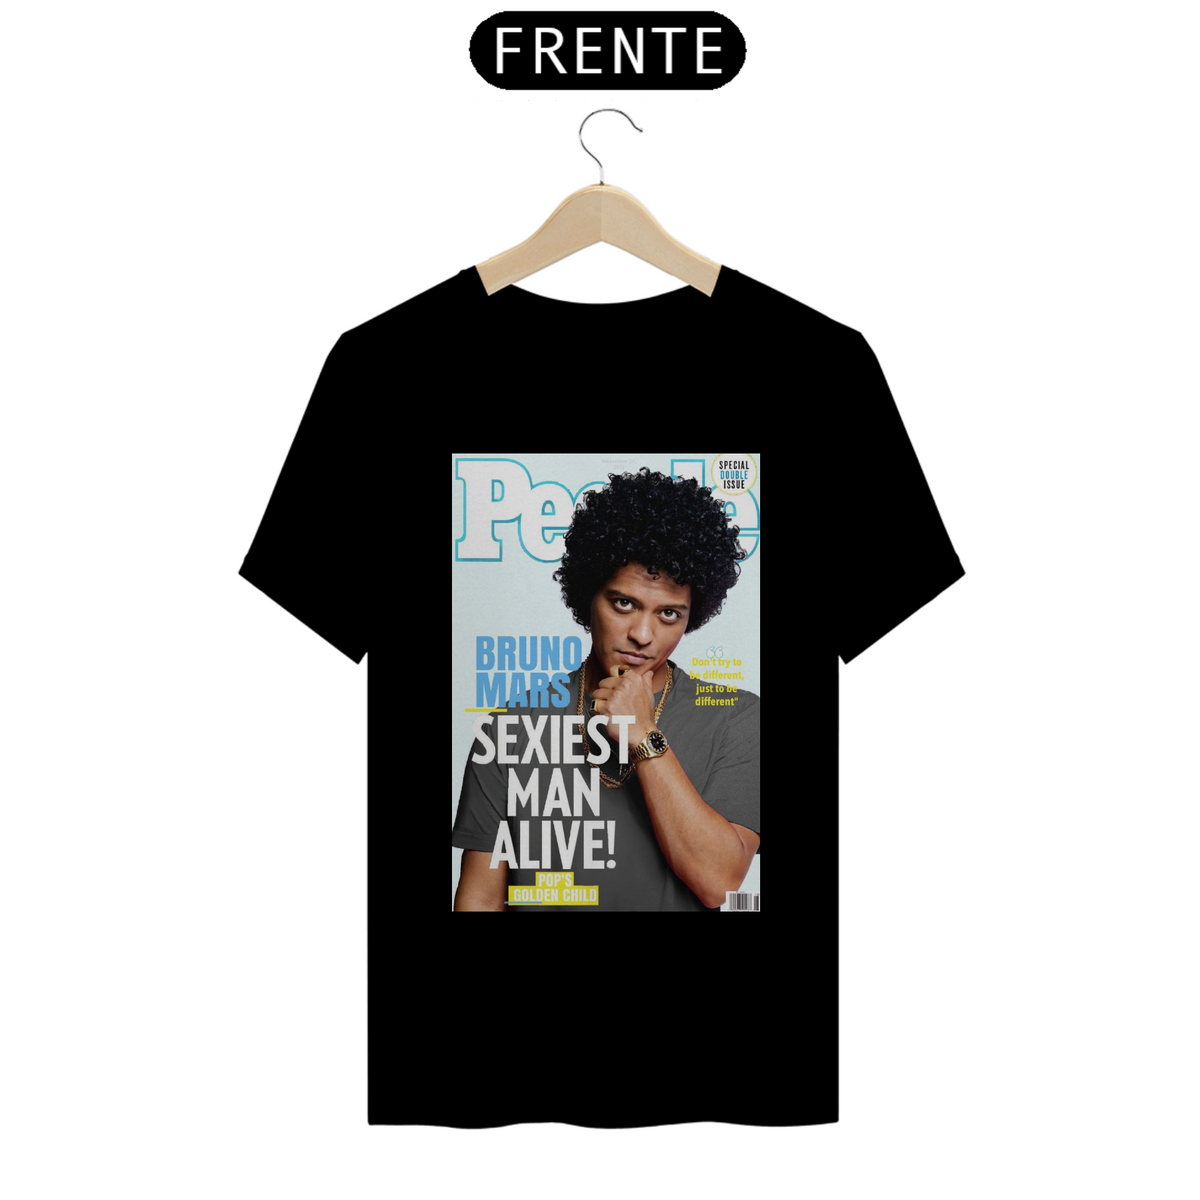 Nome do produto: Camiseta Bruno Mars